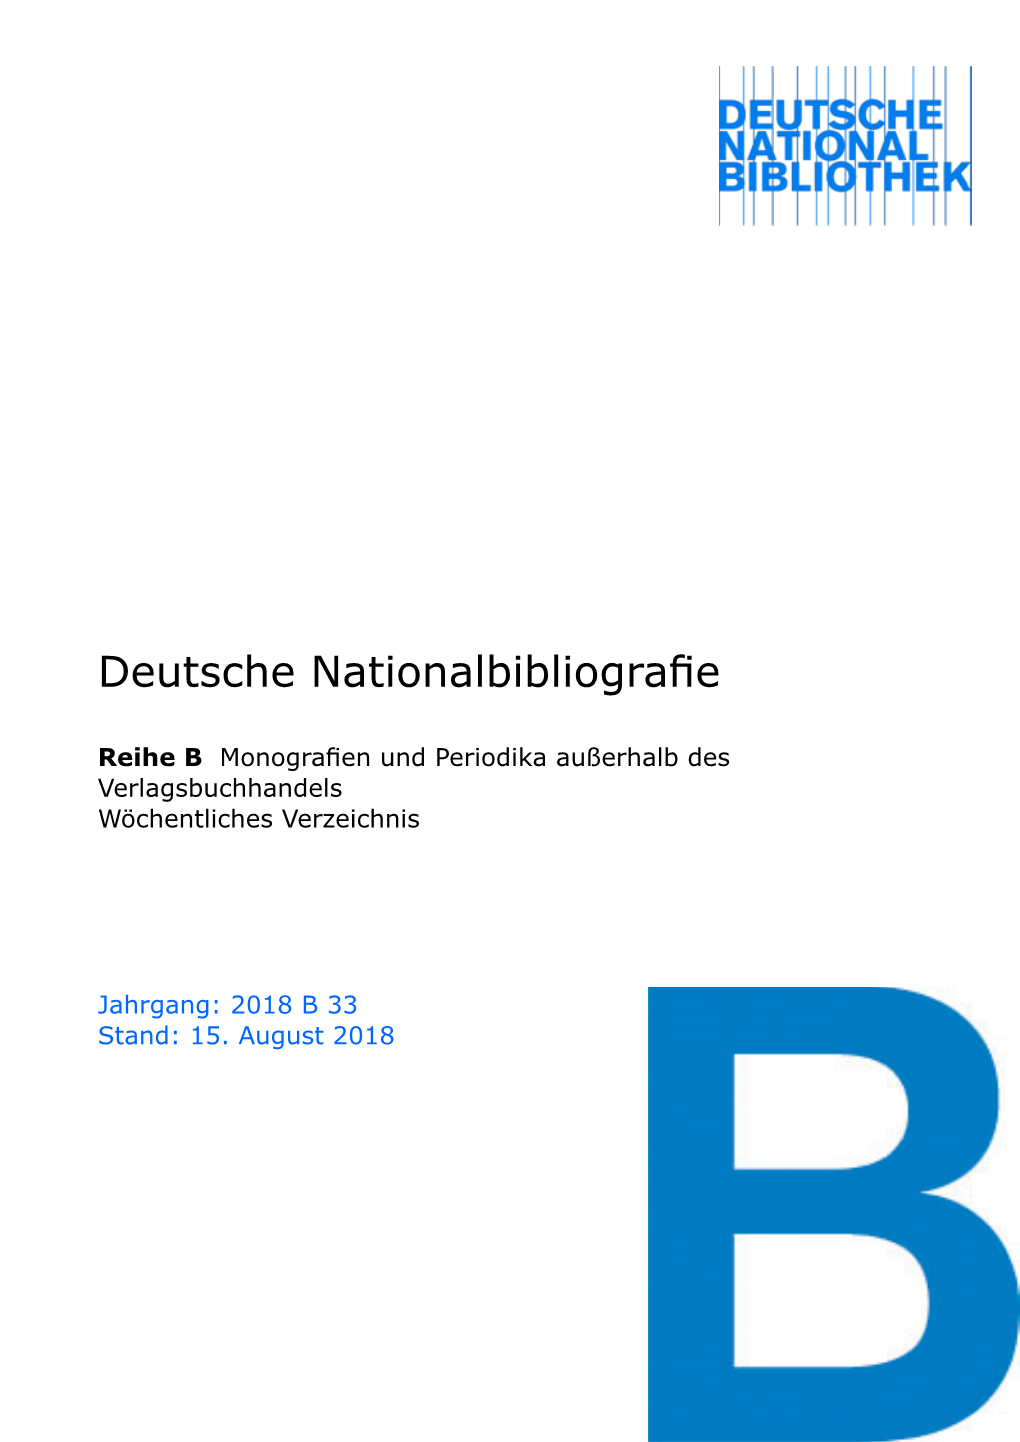 Deutsche Nationalbibliografie 2018 B 33